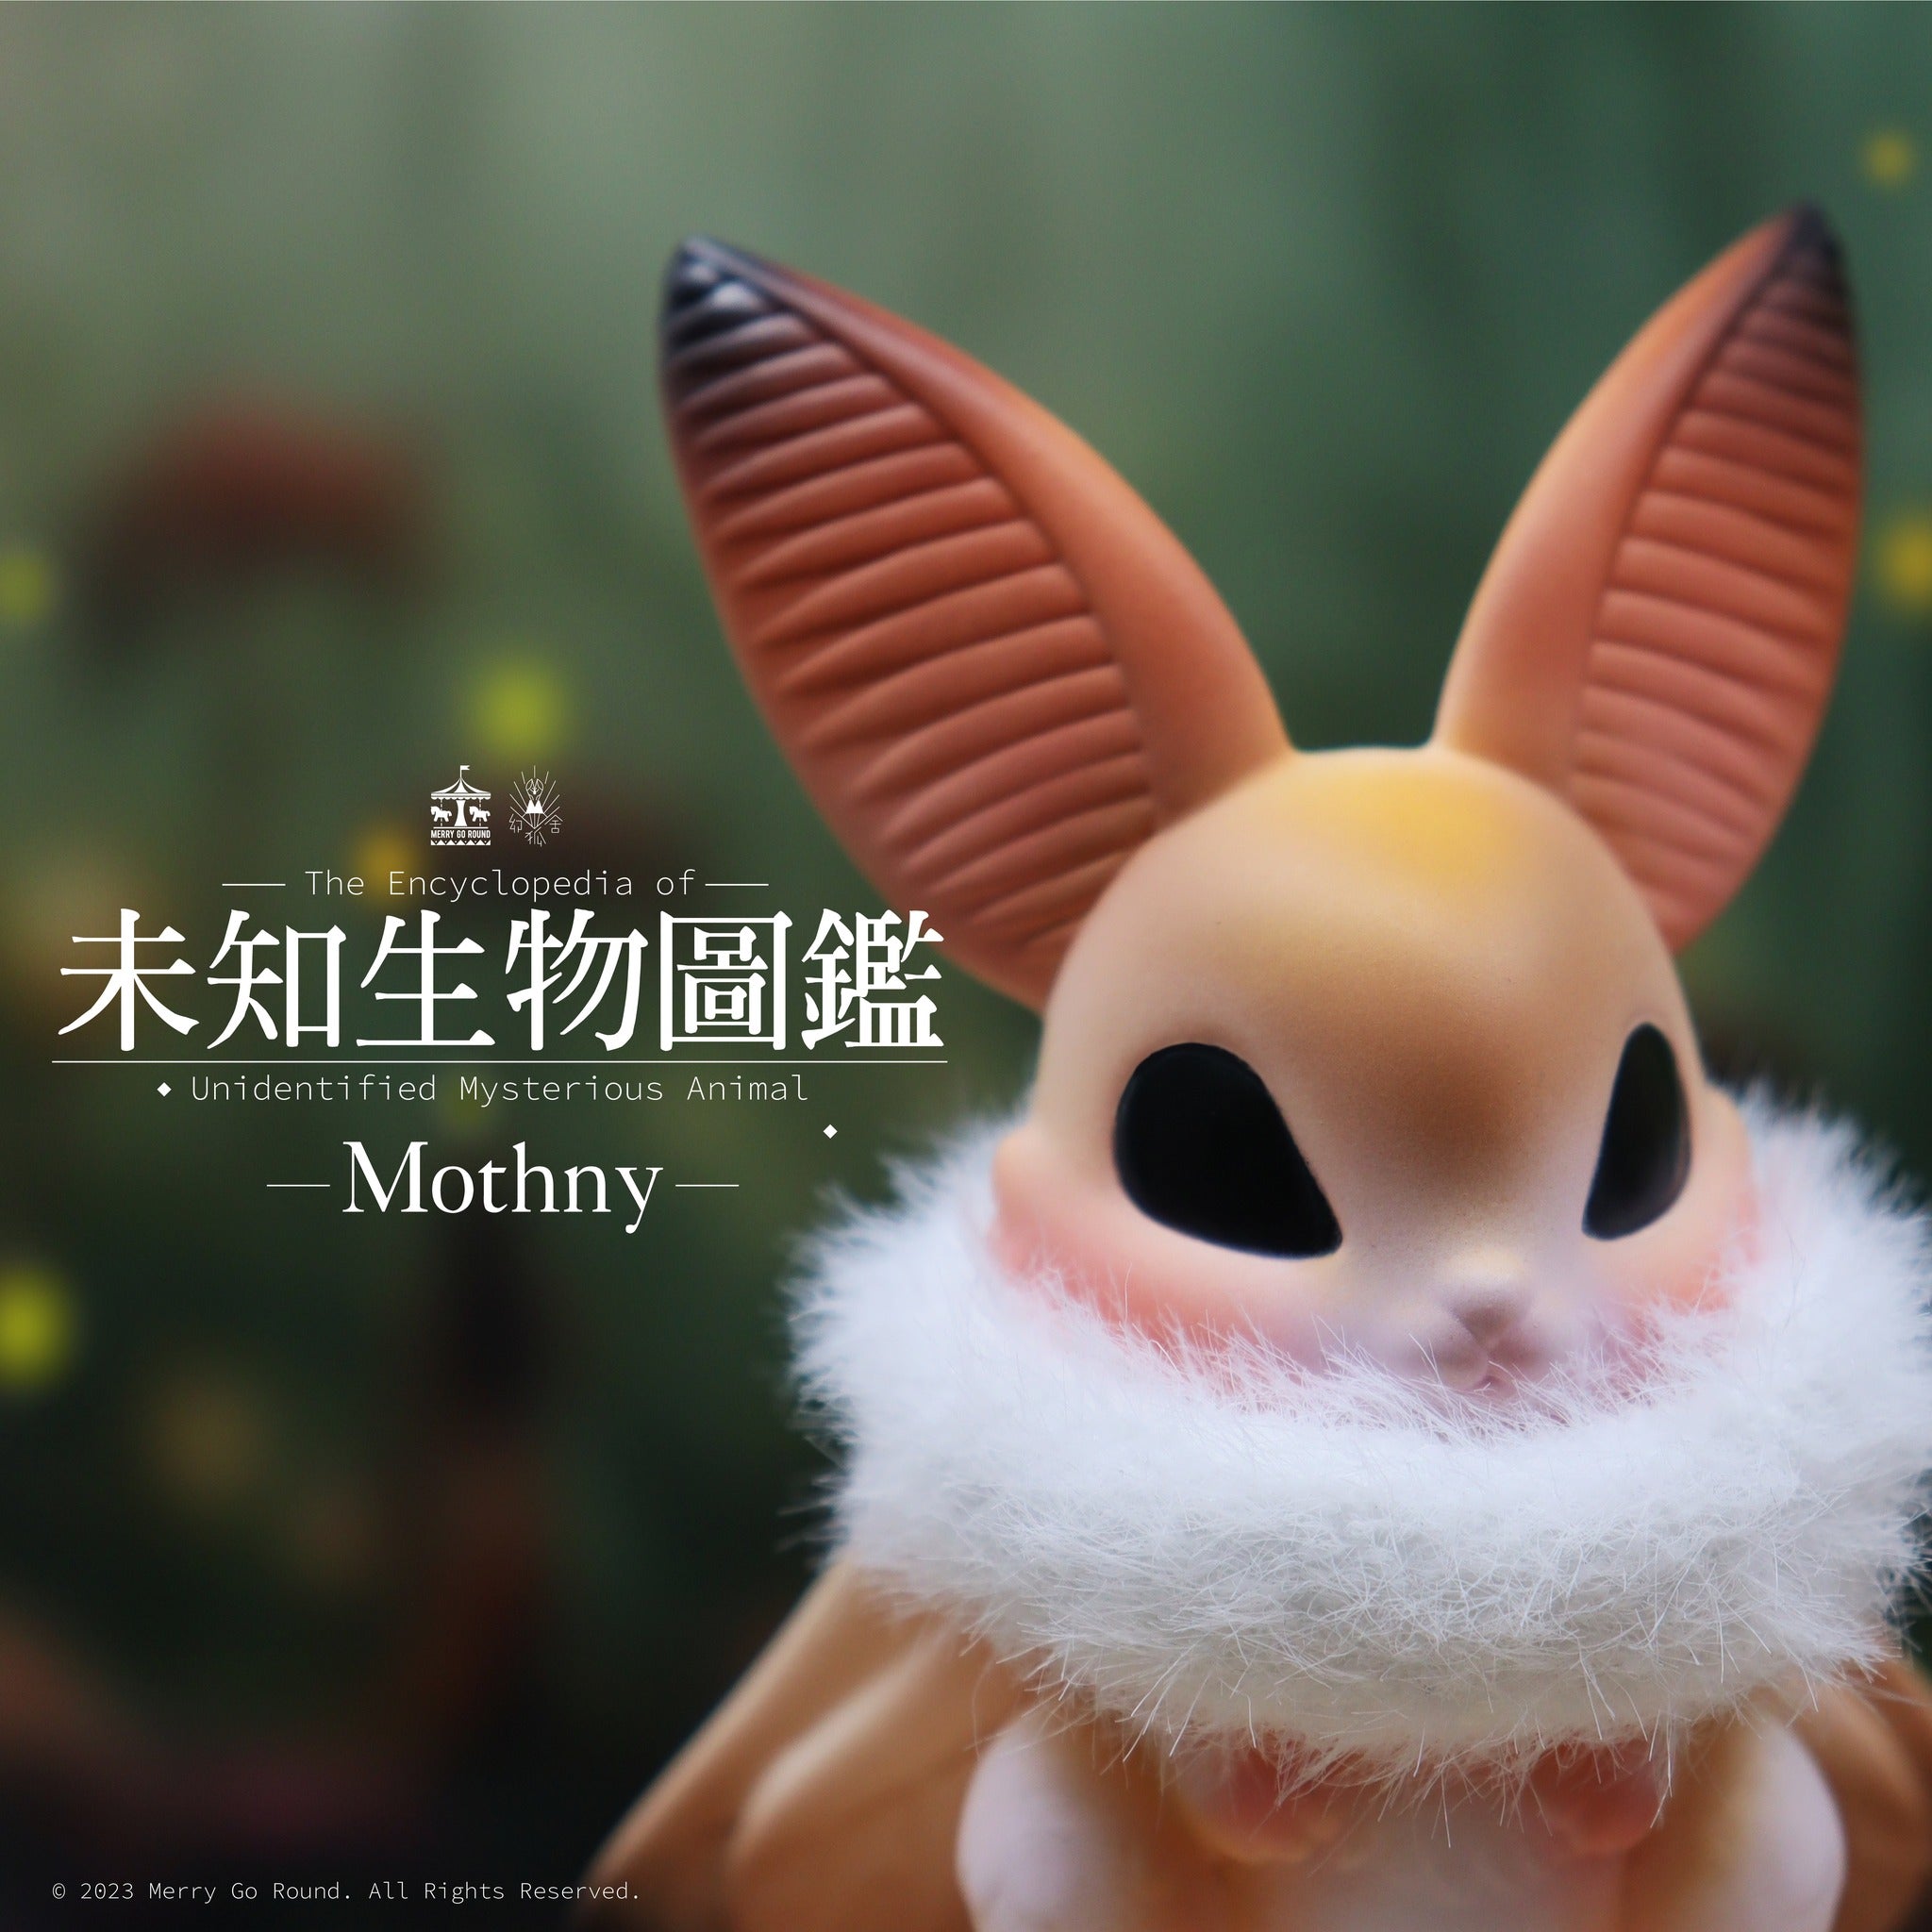 Mothny by Genkosha